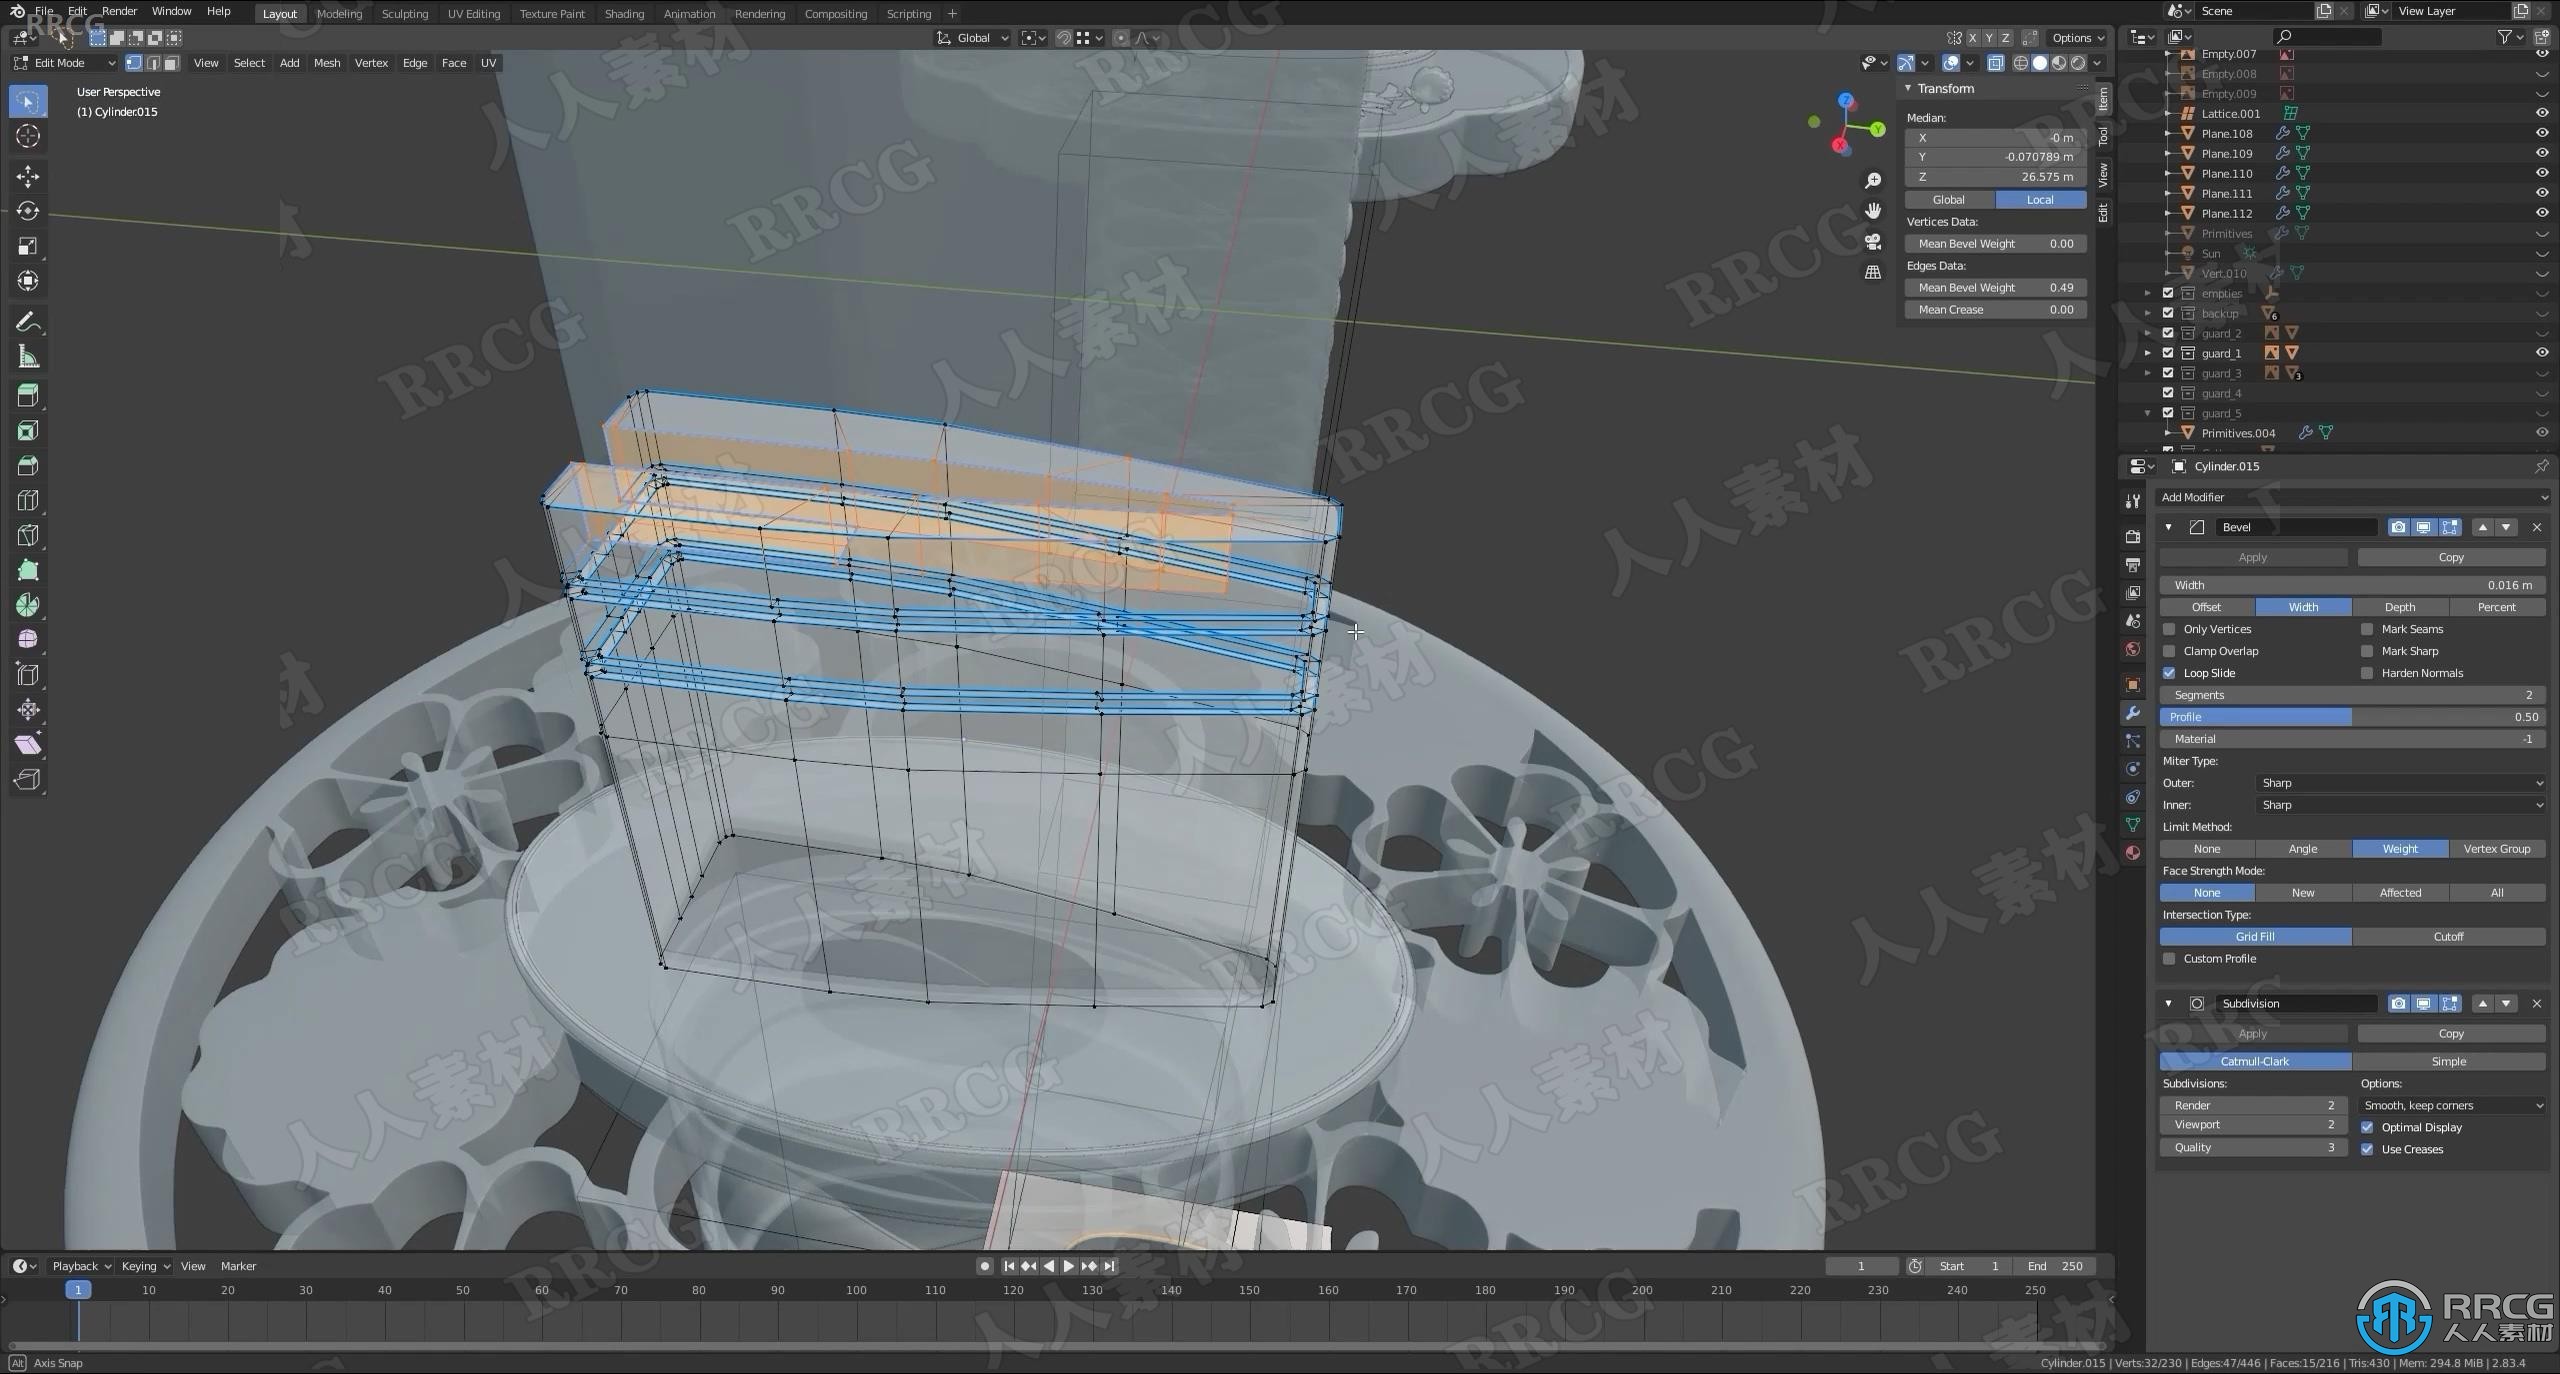 Blender日本武士刀实例建模制作视频教程